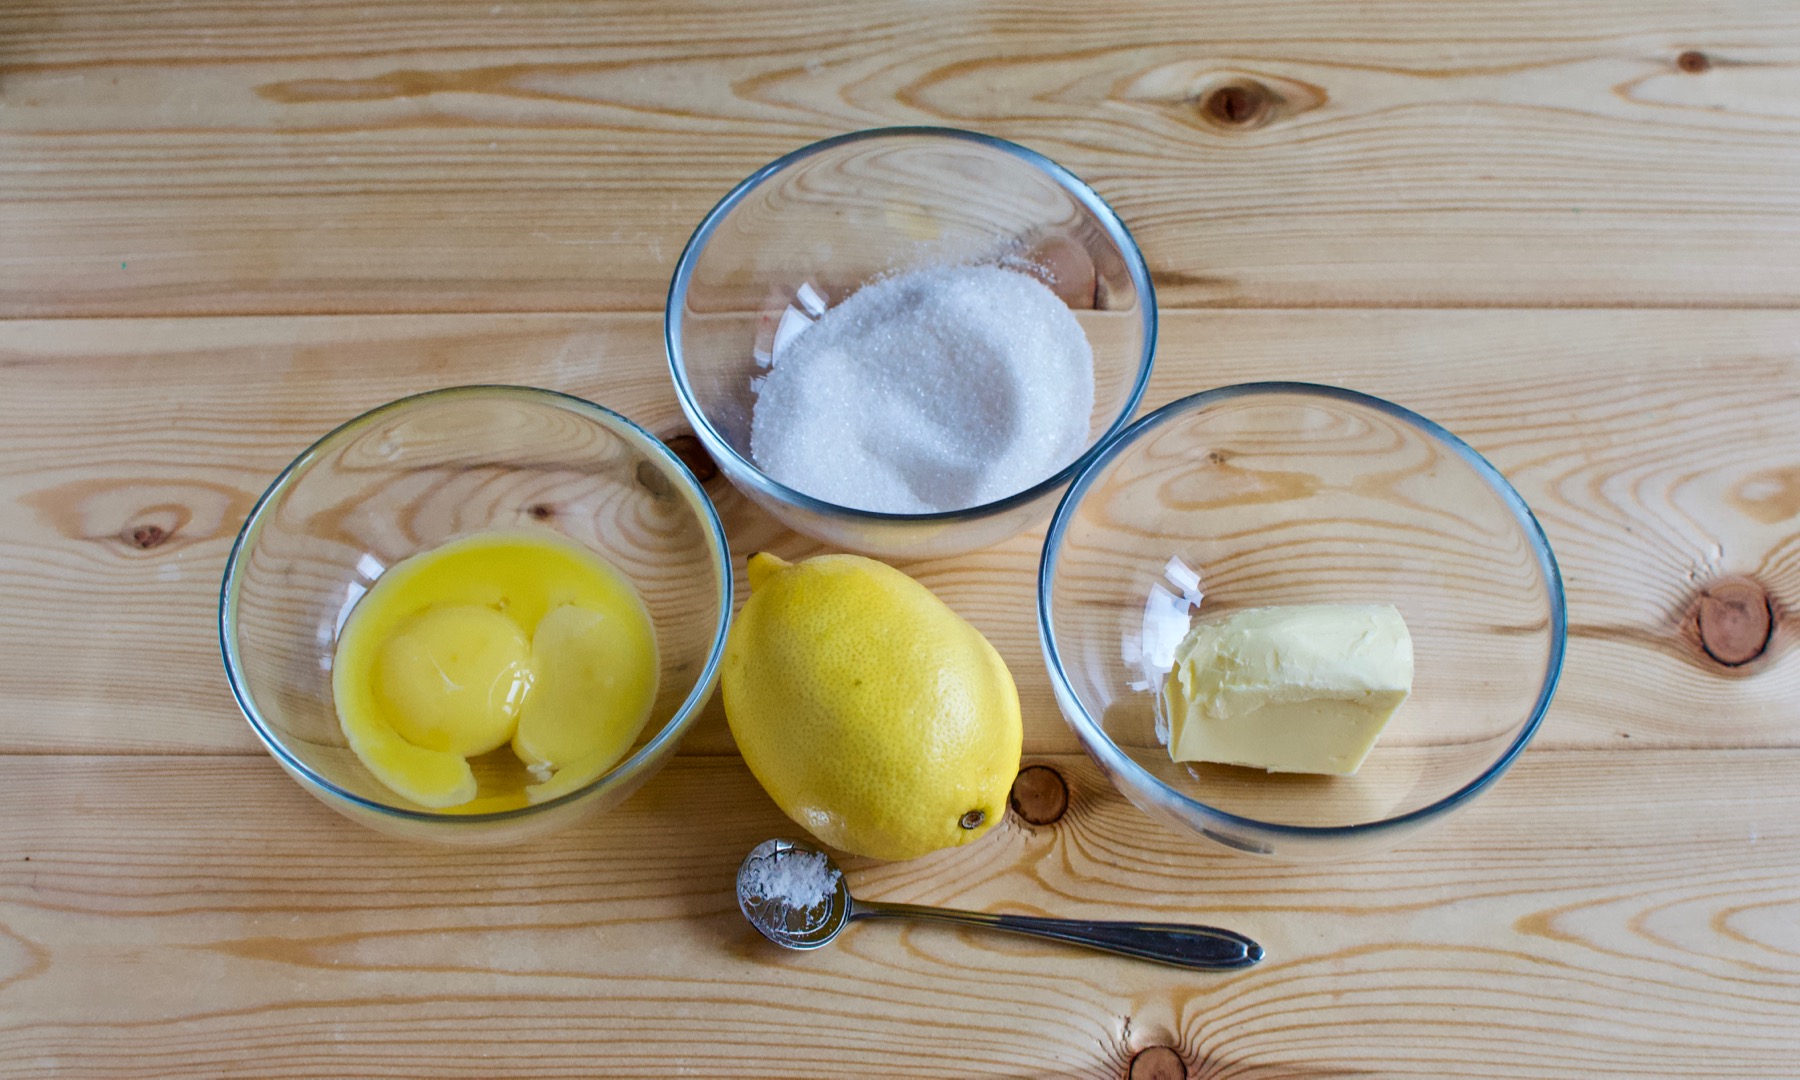 Сок лимона 1 2. Лимонный курд. Лимонная кислота на столе. Облако лимонного сока. Лимонная прослойка для торта с крахмалом.